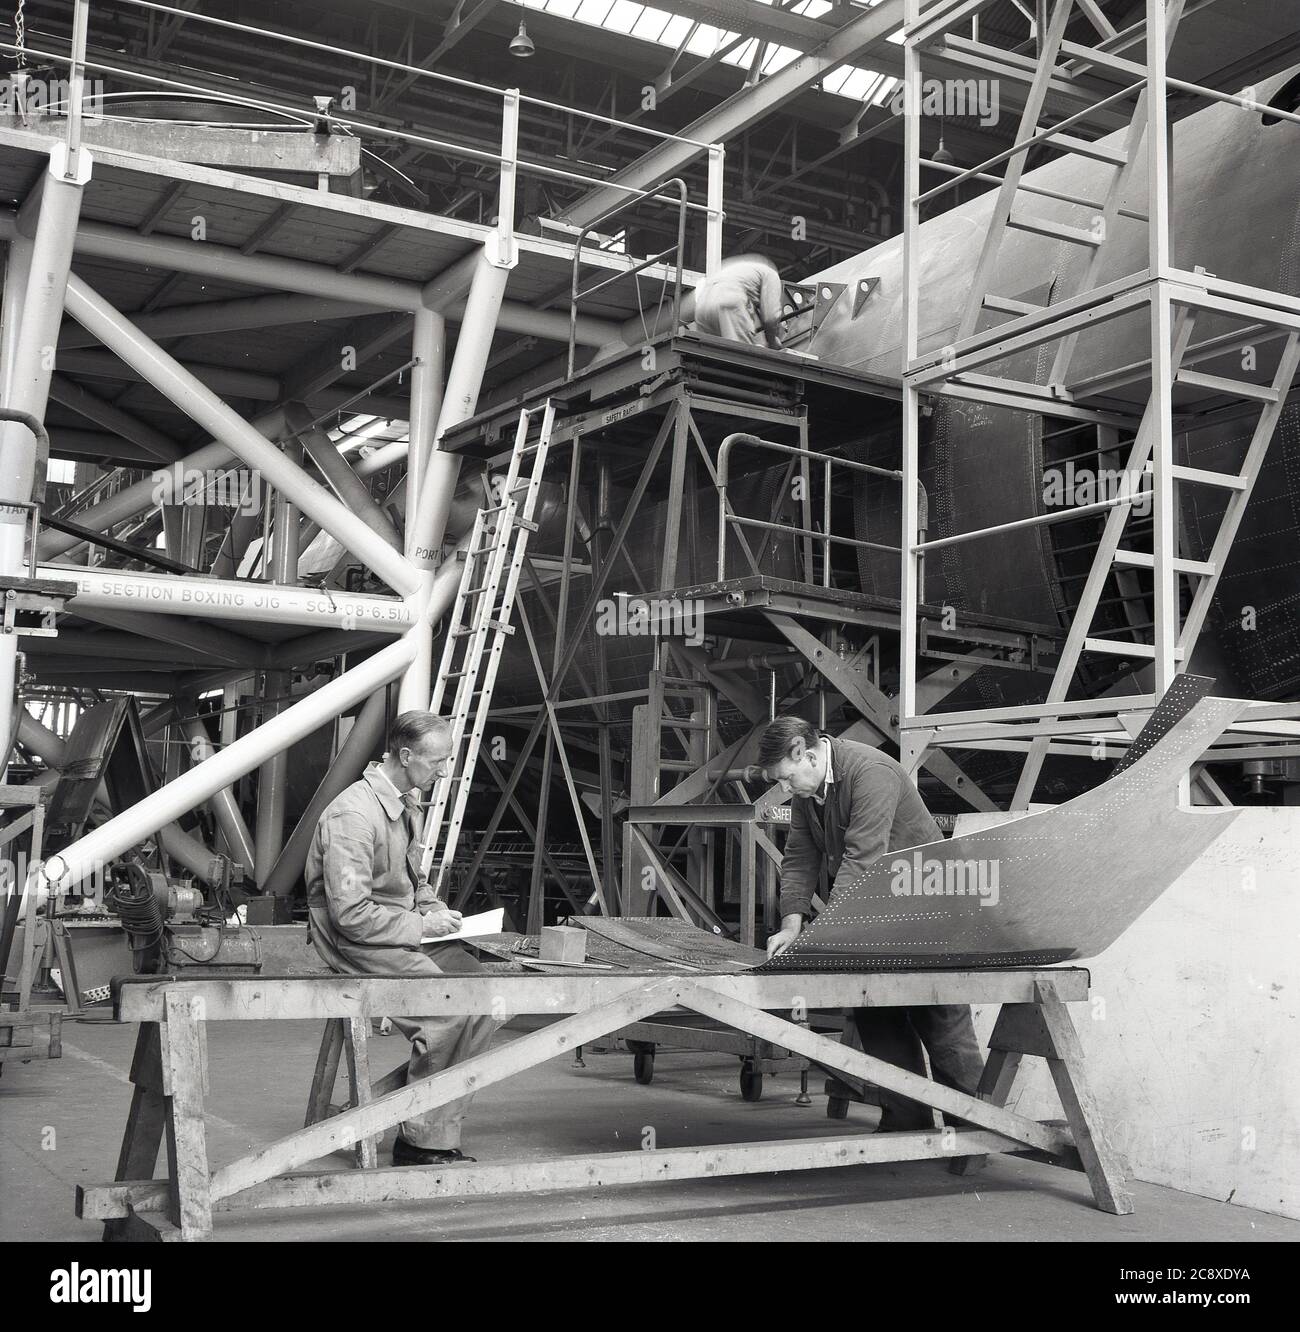 Années 1950, historique, deux ingénieurs chez un constructeur aéronautique dans un grand cintre vérifiant un panneau d'acier externe pour le fuselage ou le corps principal d'un gros avion en construction, Belfast, Irlande du Nord, Royaume-Uni. Banque D'Images